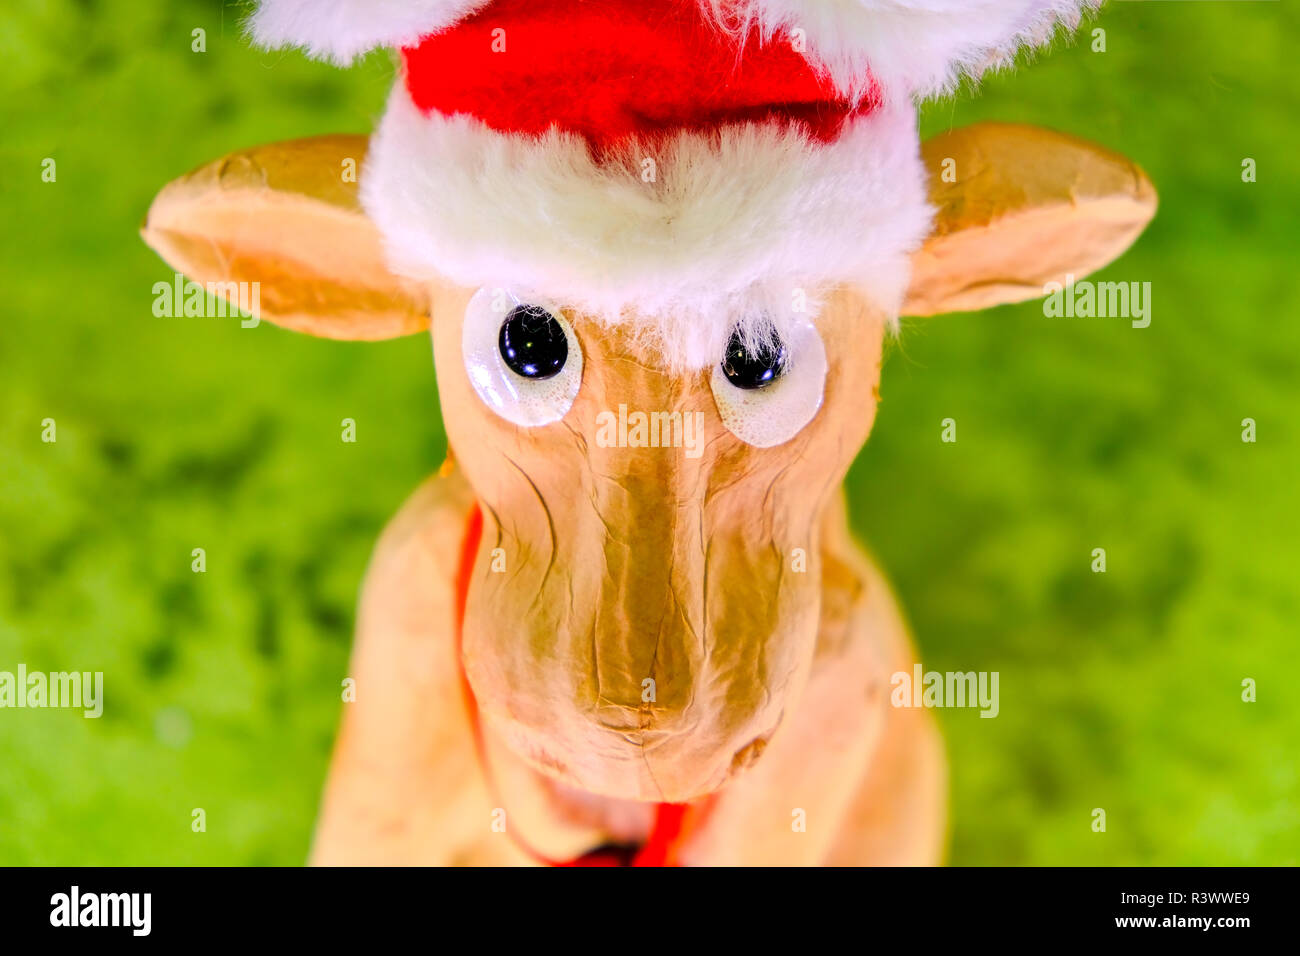 Le renne de noël ornement avec chapeau personnage face portrait portrait décoration jouets Banque D'Images